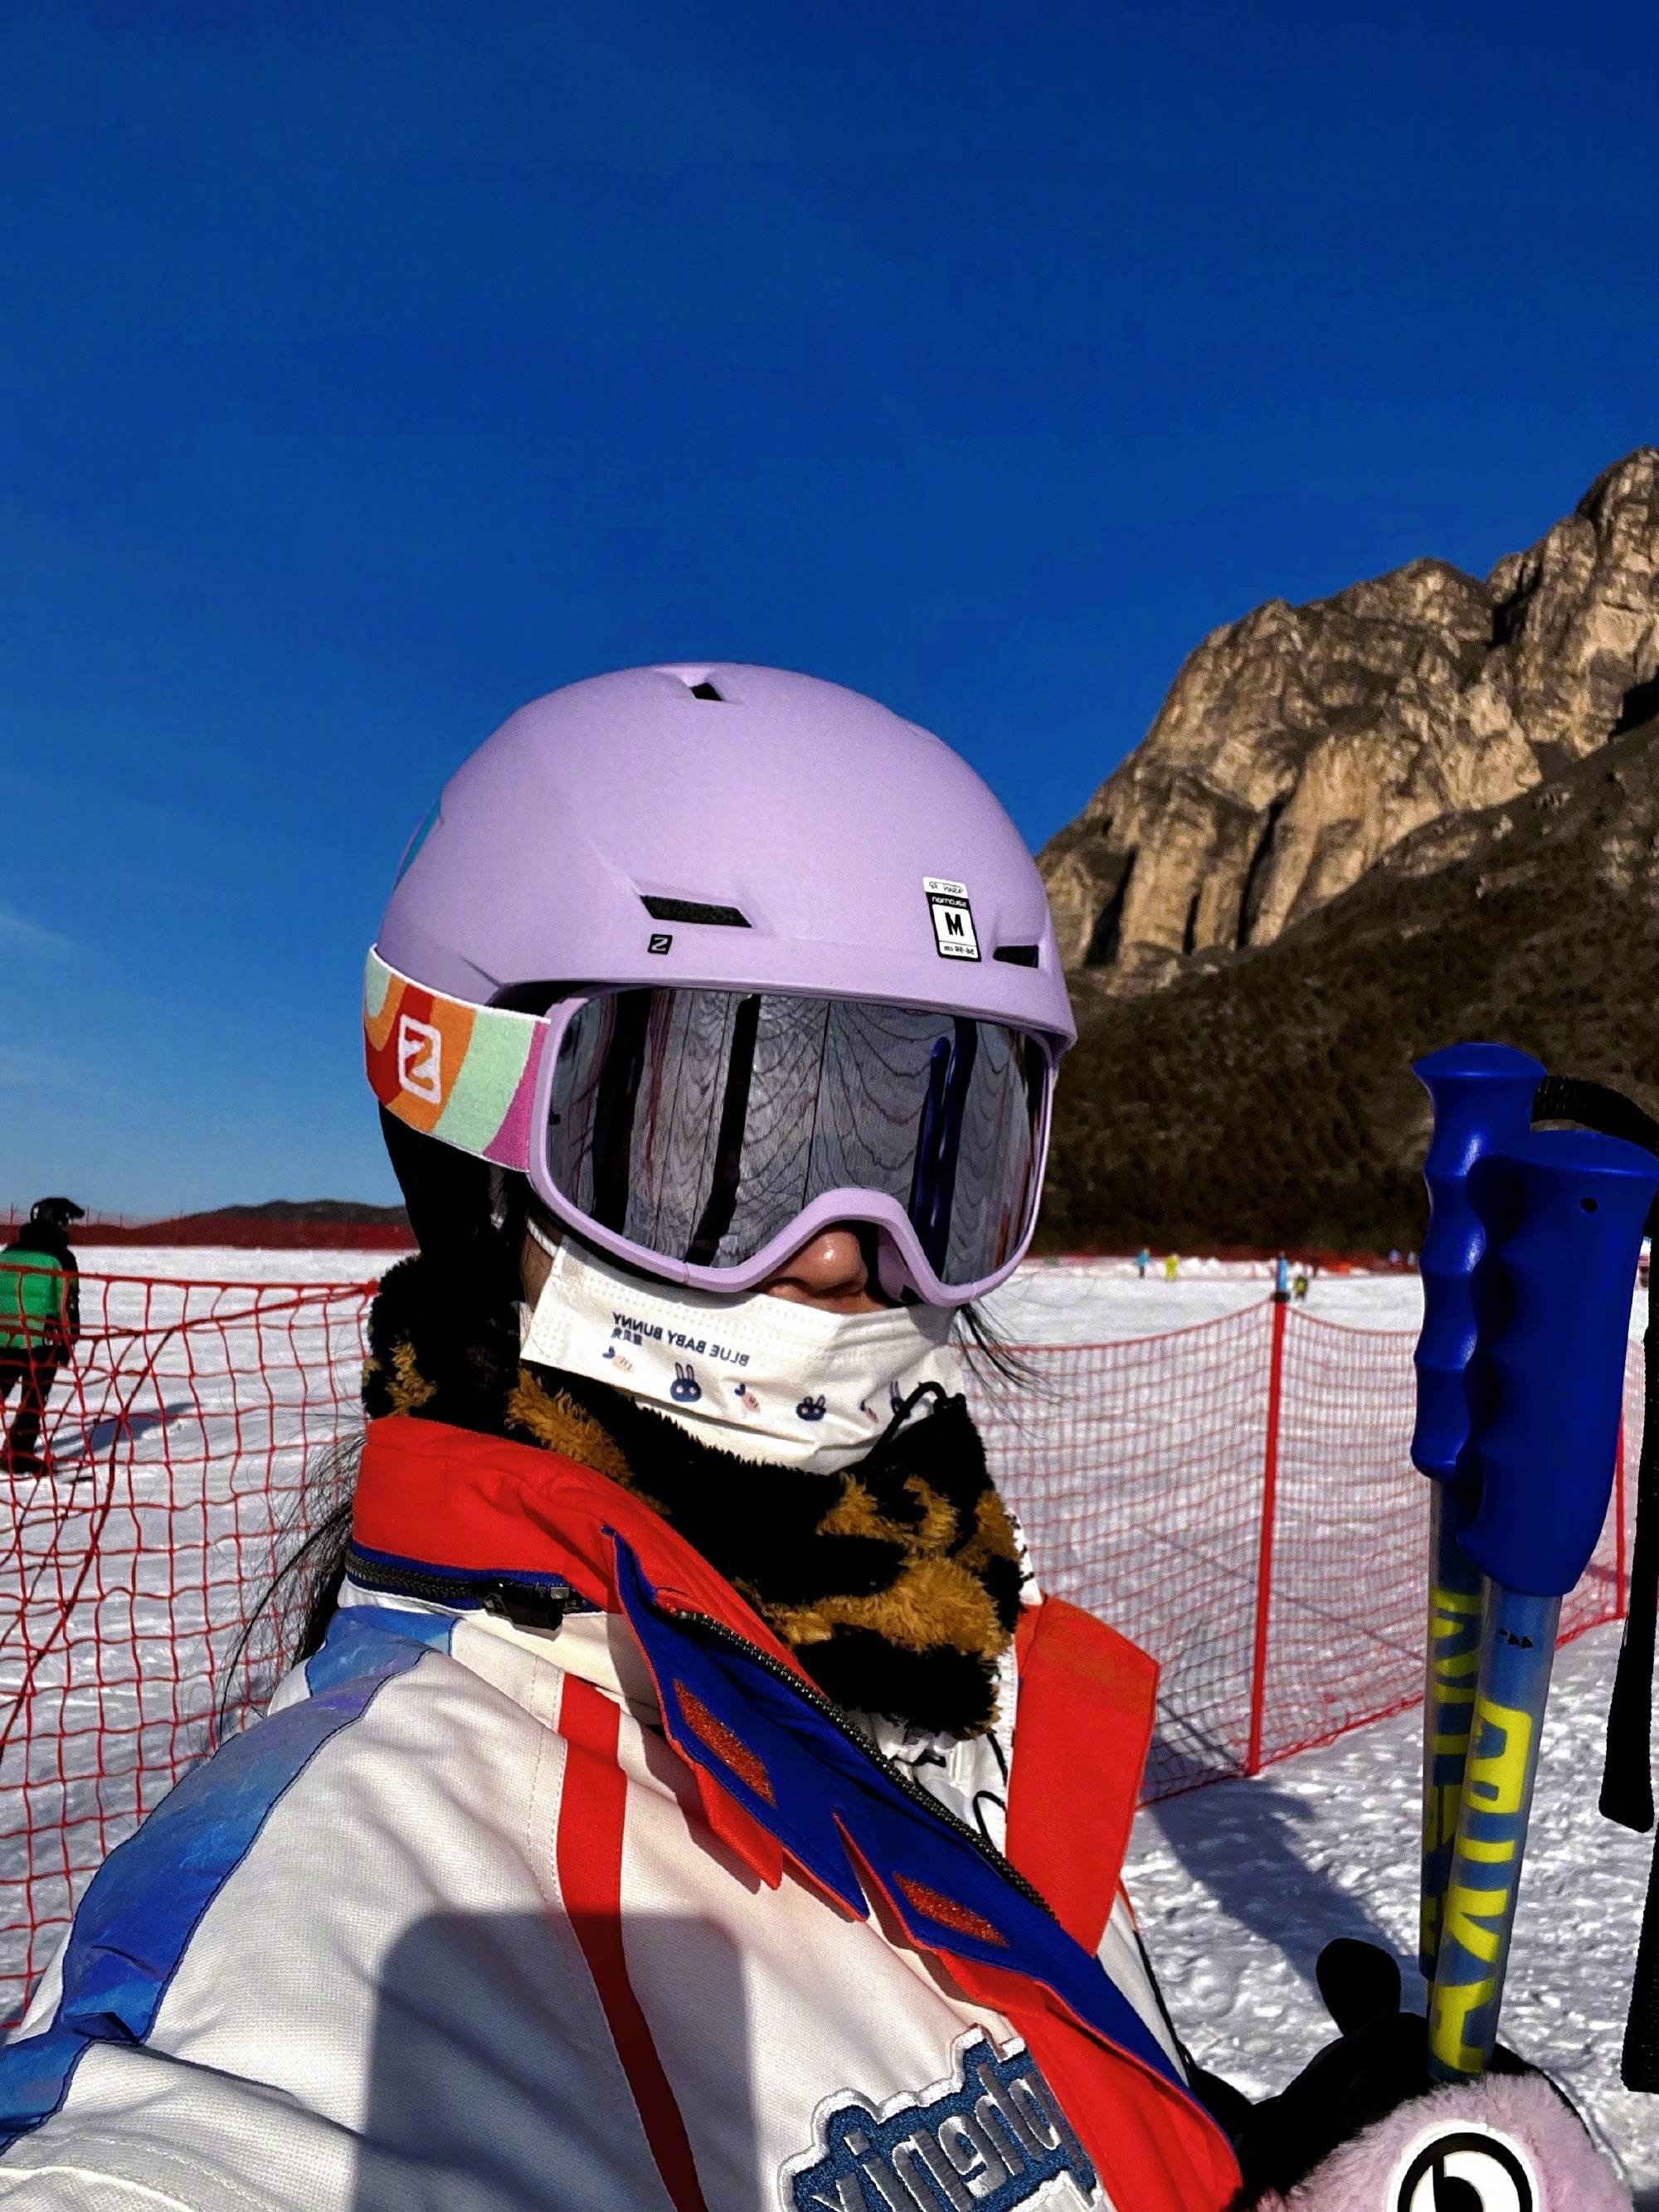 搜狐娱乐讯 2月9日，林允在社交平台发布一组自己滑雪的照片，并配文：“解锁新技能 今天是双板女孩”。照片中的林允戴着头盔和护目镜包裹十分严实，手拿雪板开心玩耍。林允手拿